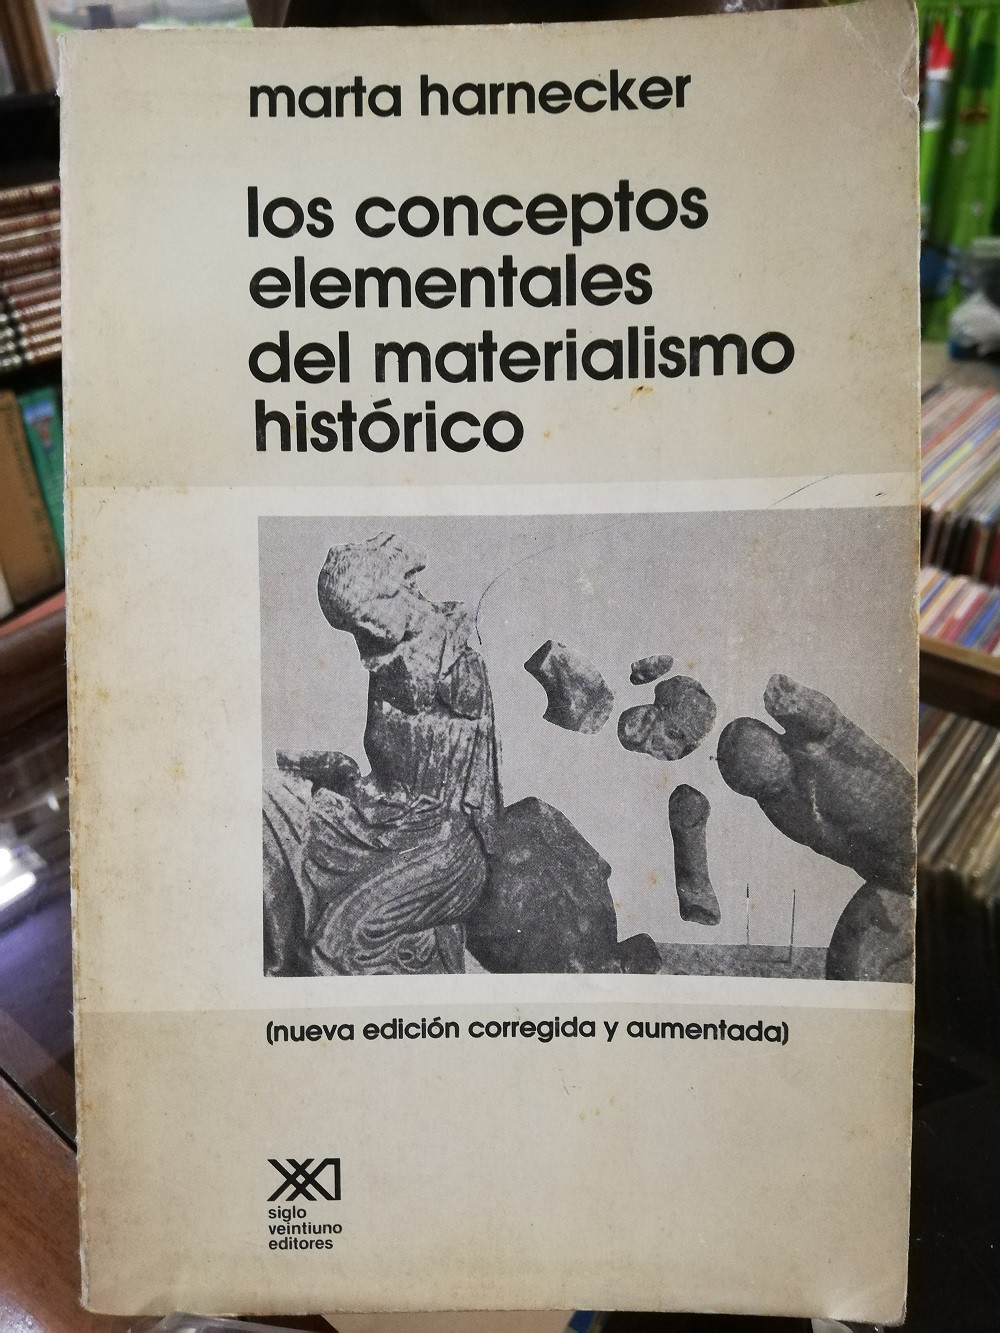 Imagen LOS CONCEPTOS ELEMENTALES DEL MATERIALISMO HISTÓRICO - MARTA HARNECKER 1